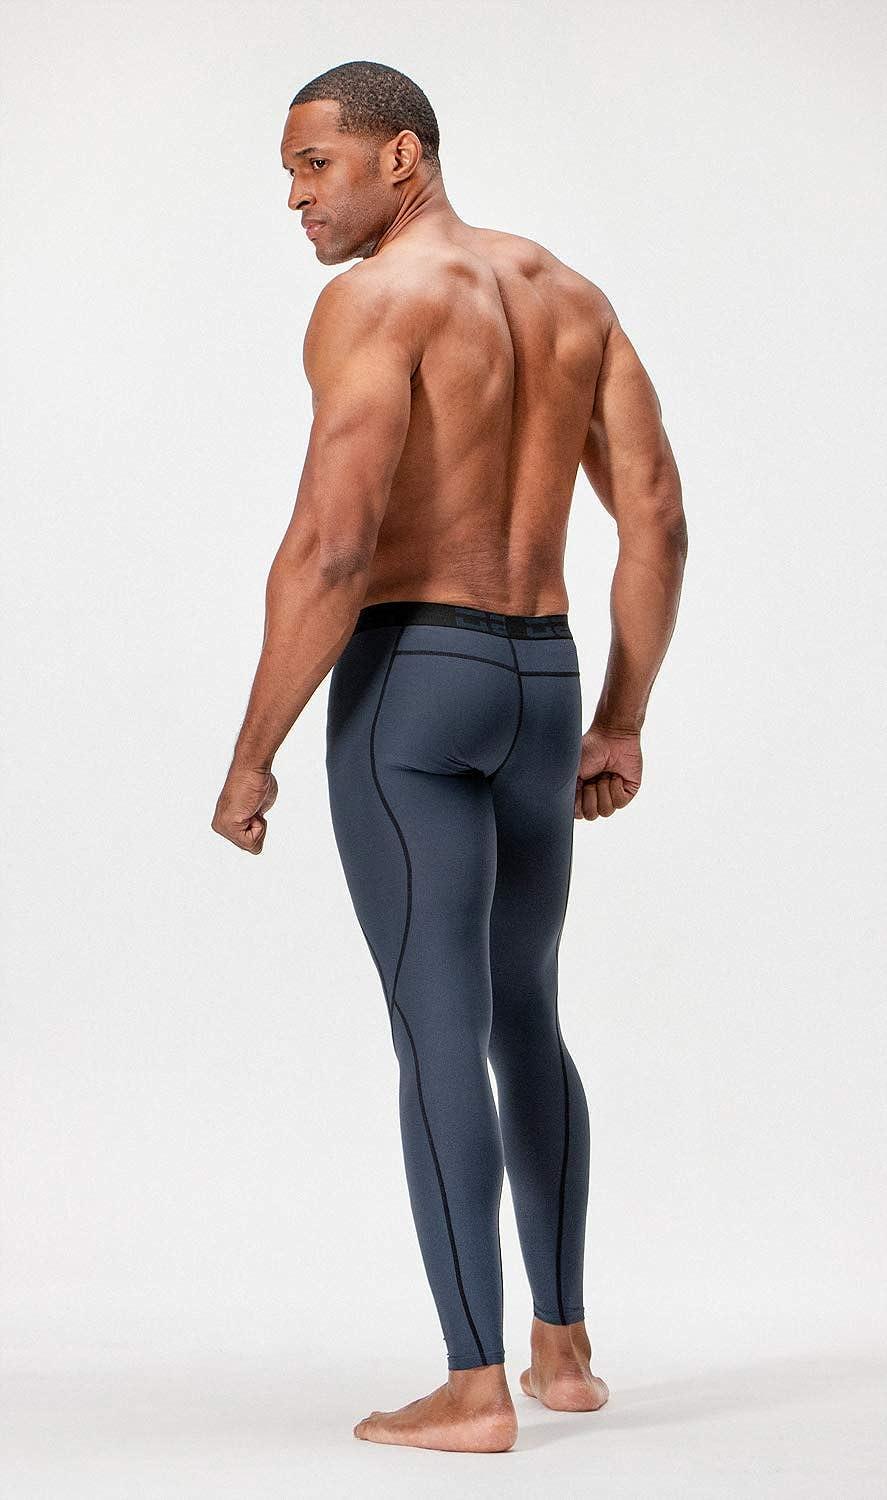 DEVOPS 2 or 3 Pack Men's Compression Pants Athletic Leggings with  Pocket/Non-Pocket Medium 2# (Pocket) - Black / Charcoal